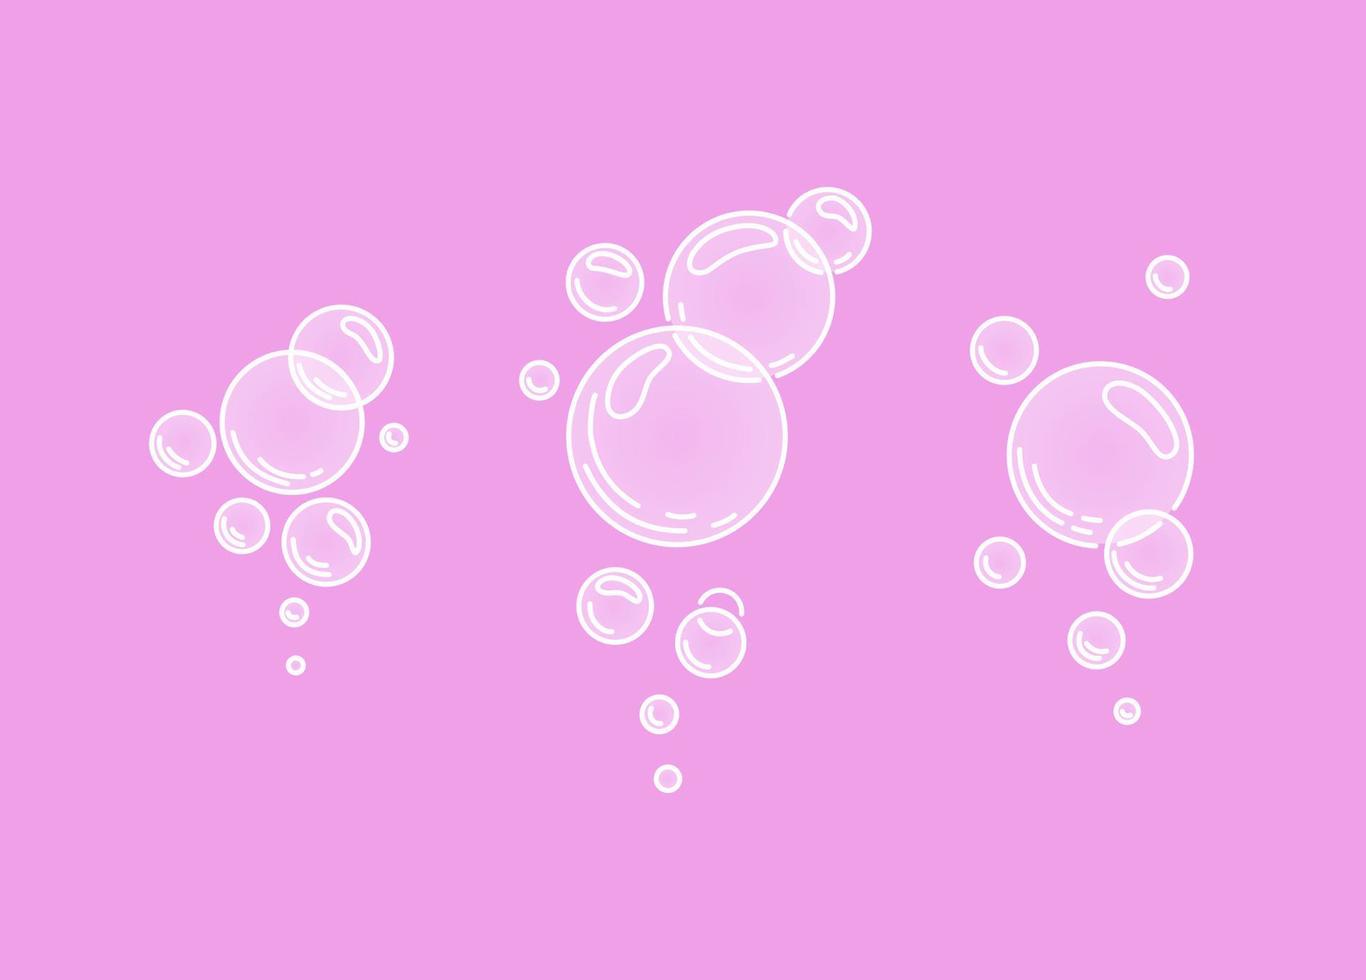 bubbles.zischende luft- oder wasserblasen auf rosa hintergrund. sprudelnde Funkeln. Gummi. Vektor-Cartoon-Illustration. Vektor-Illustration vektor